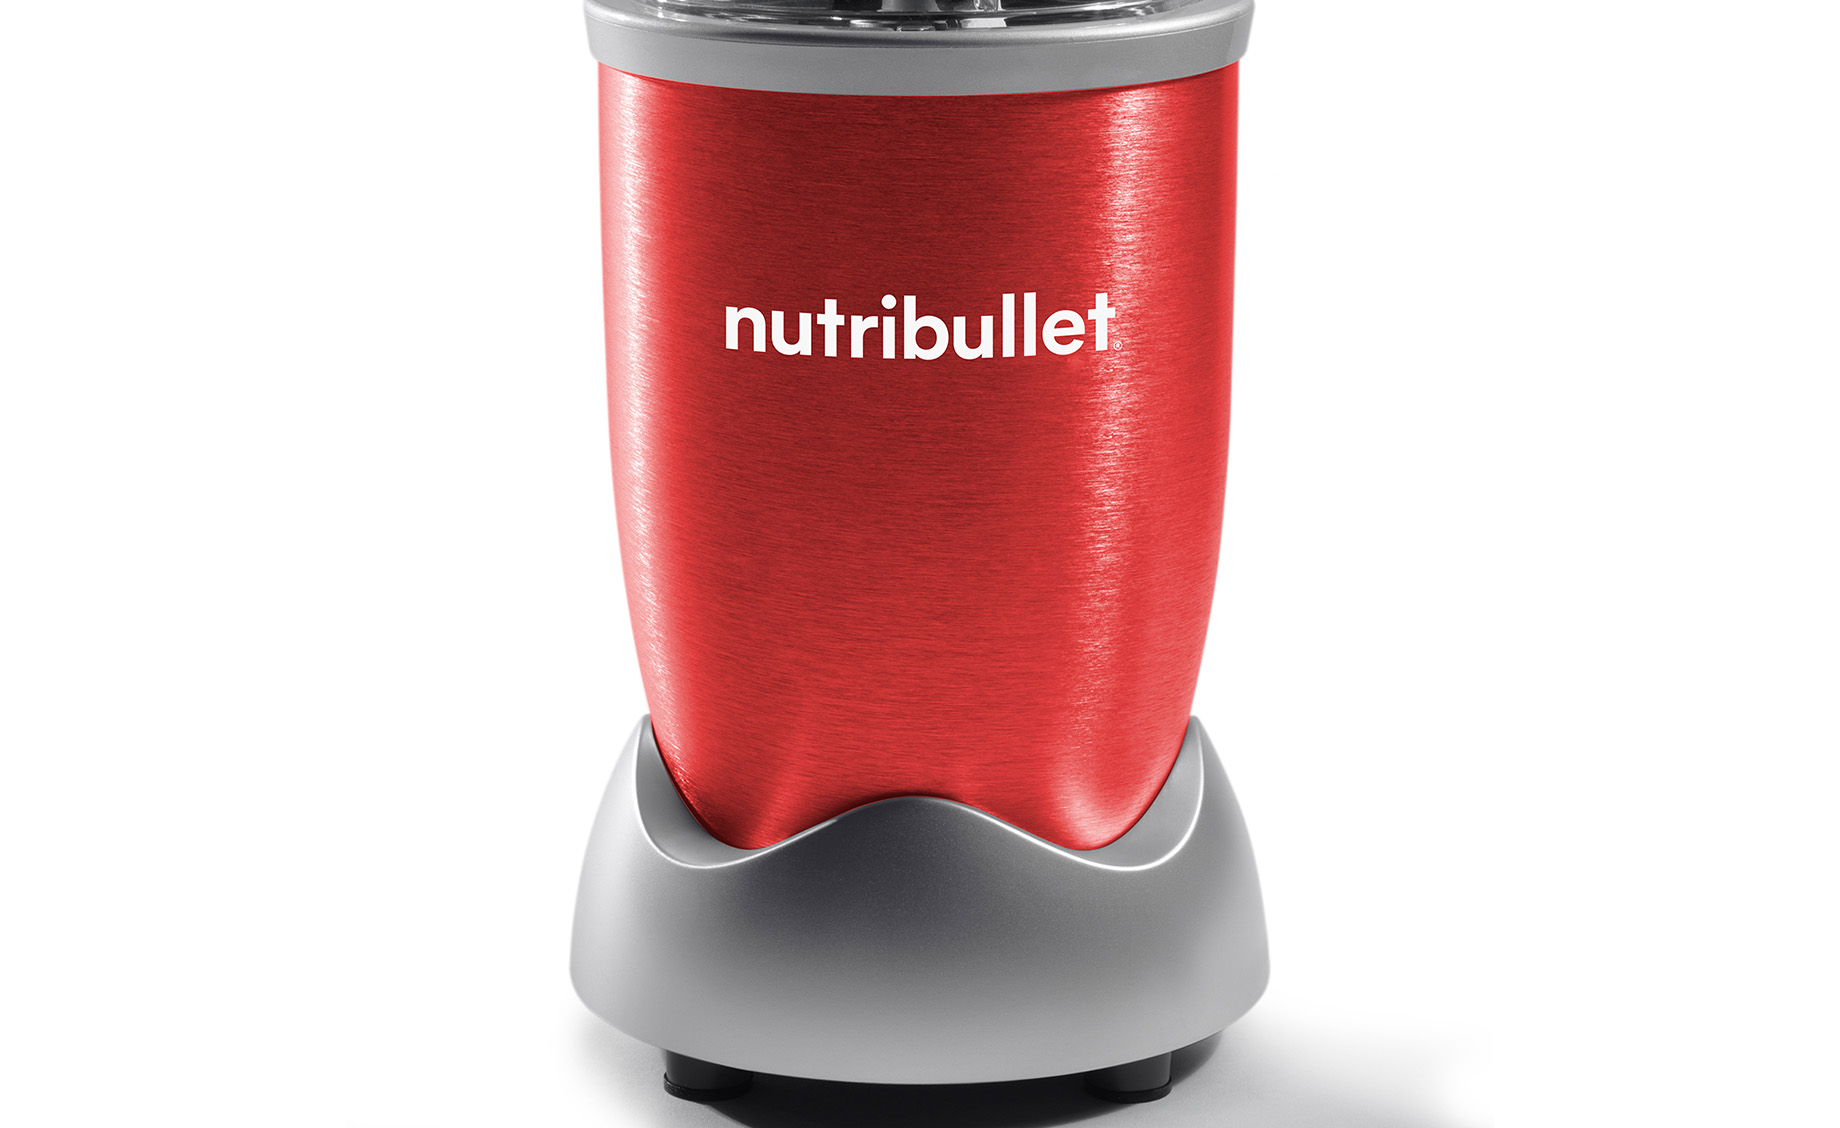 Nutribullet NB606R blender